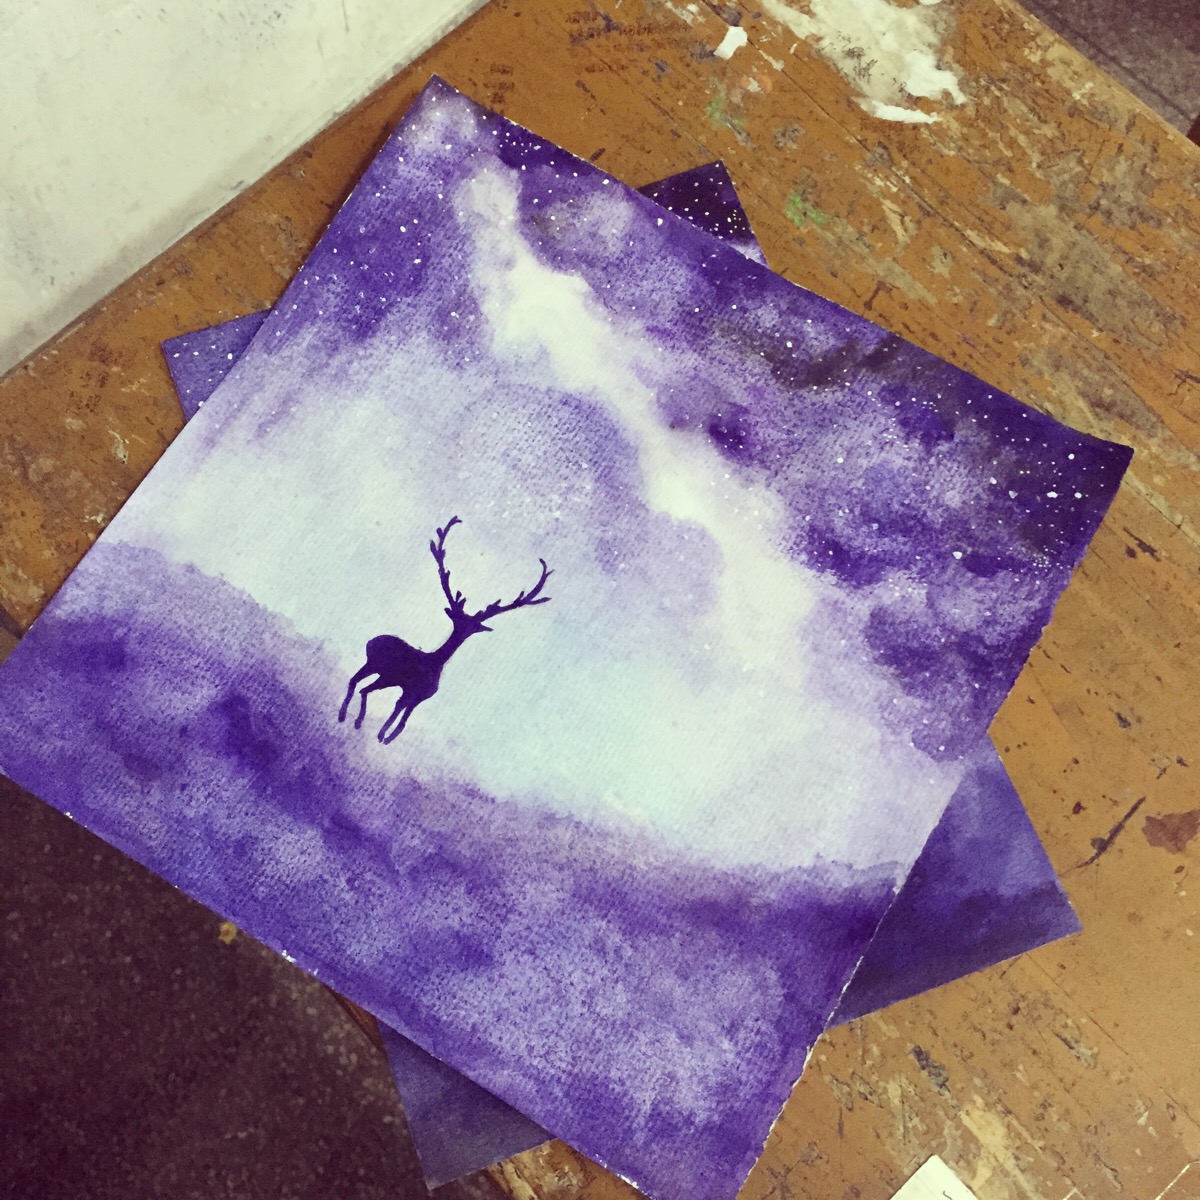 月光下的小鹿水彩画图片